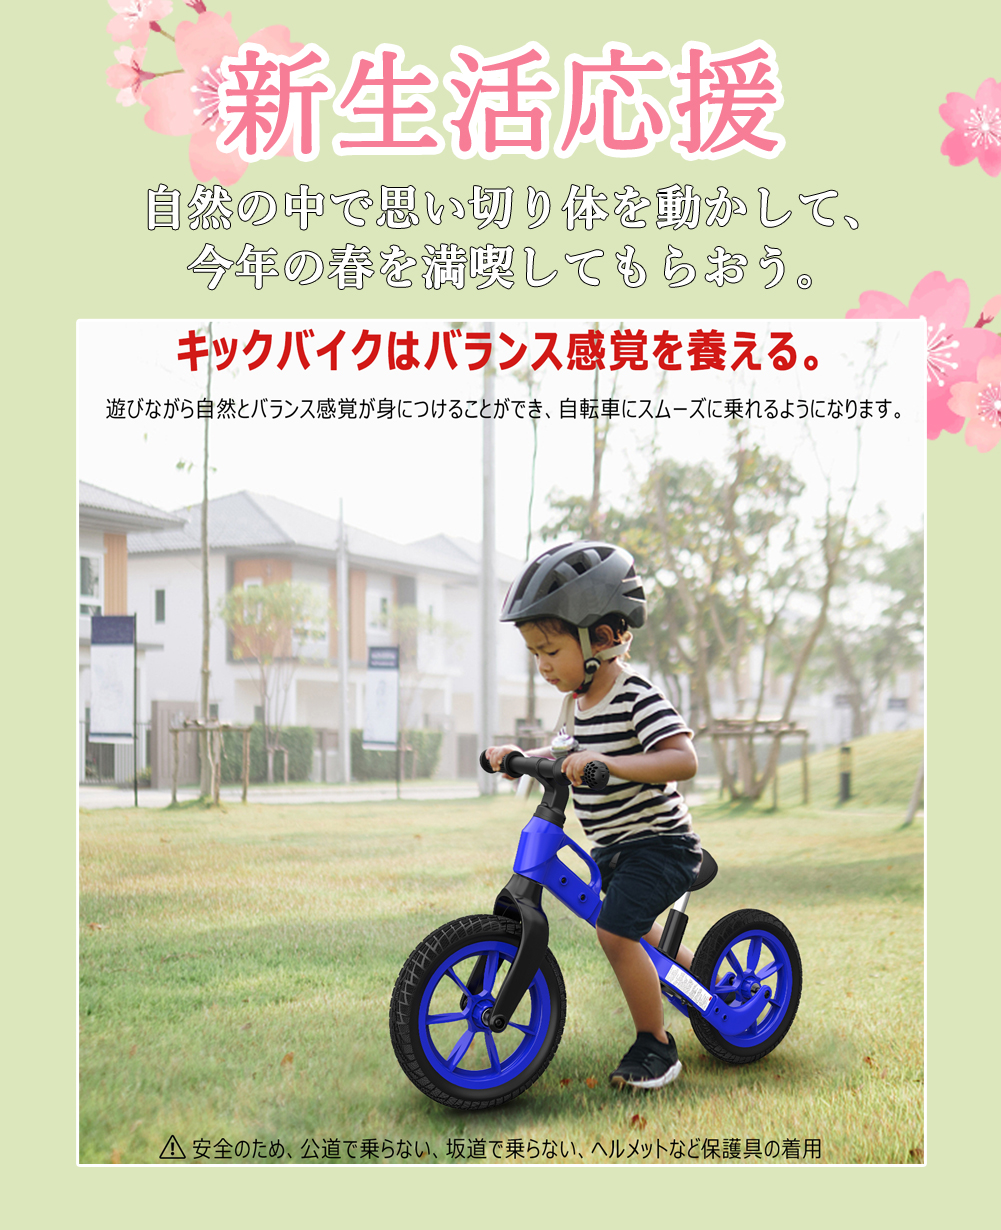 キックバイク バランスバイク ペダルなし自転車 12インチ 子供用自転車 軽量 組立簡単 ストライダー 2歳〜6歳 子どもの日 誕生日 プレゼント